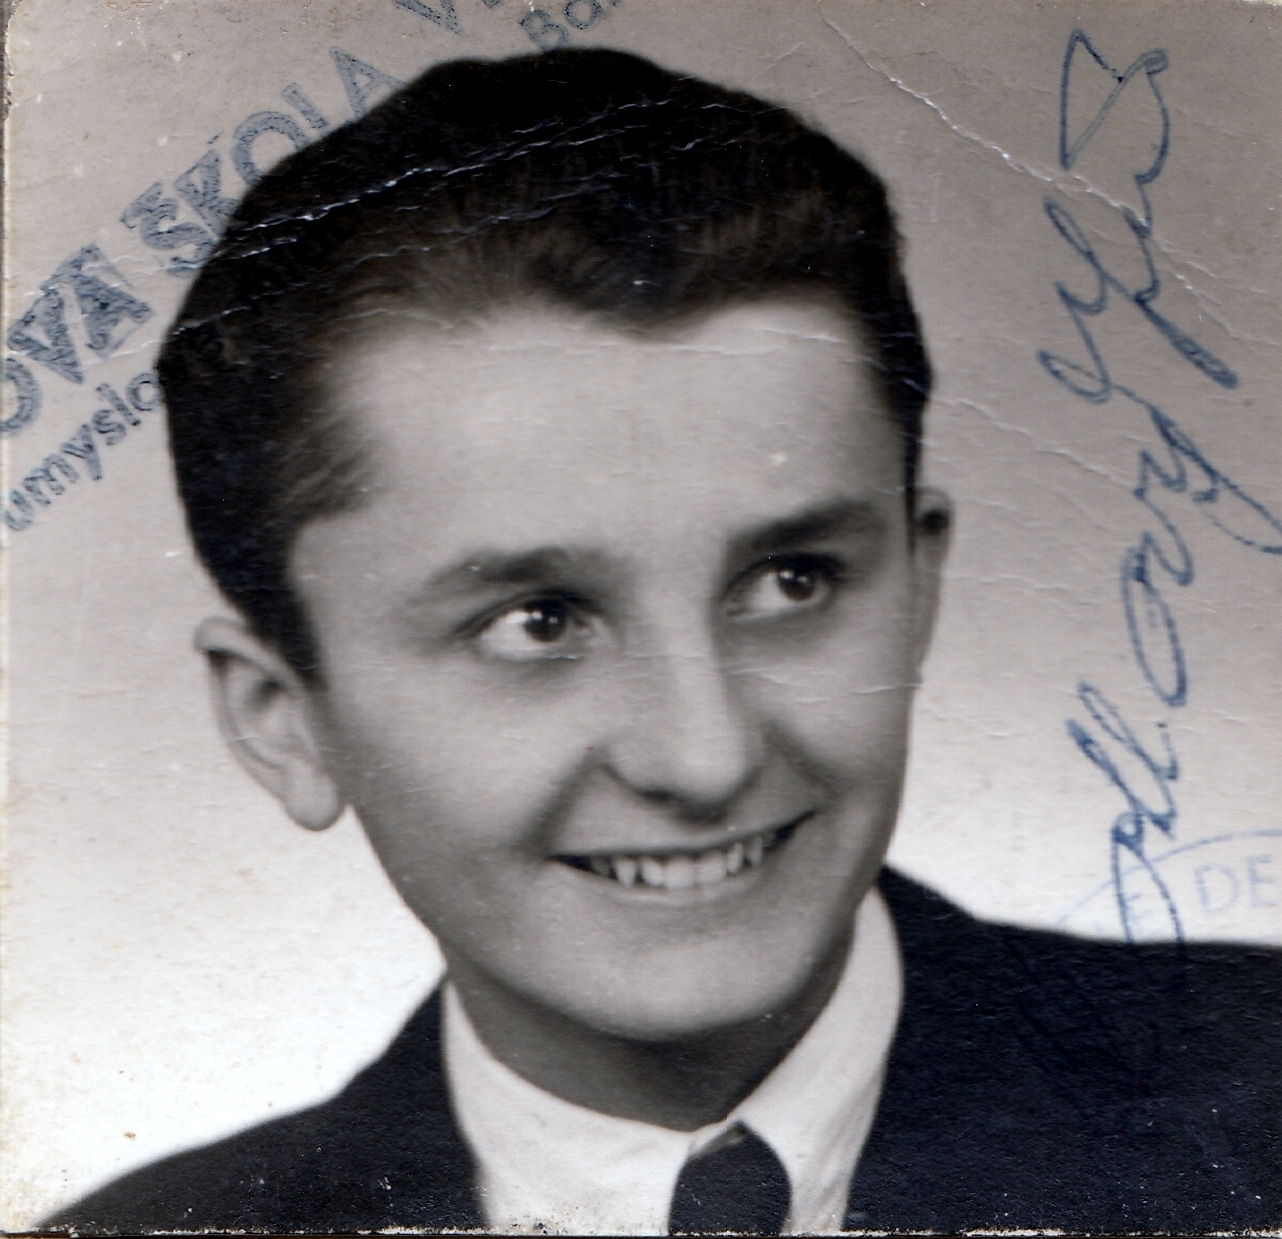 Jiří Kotlový in 1942